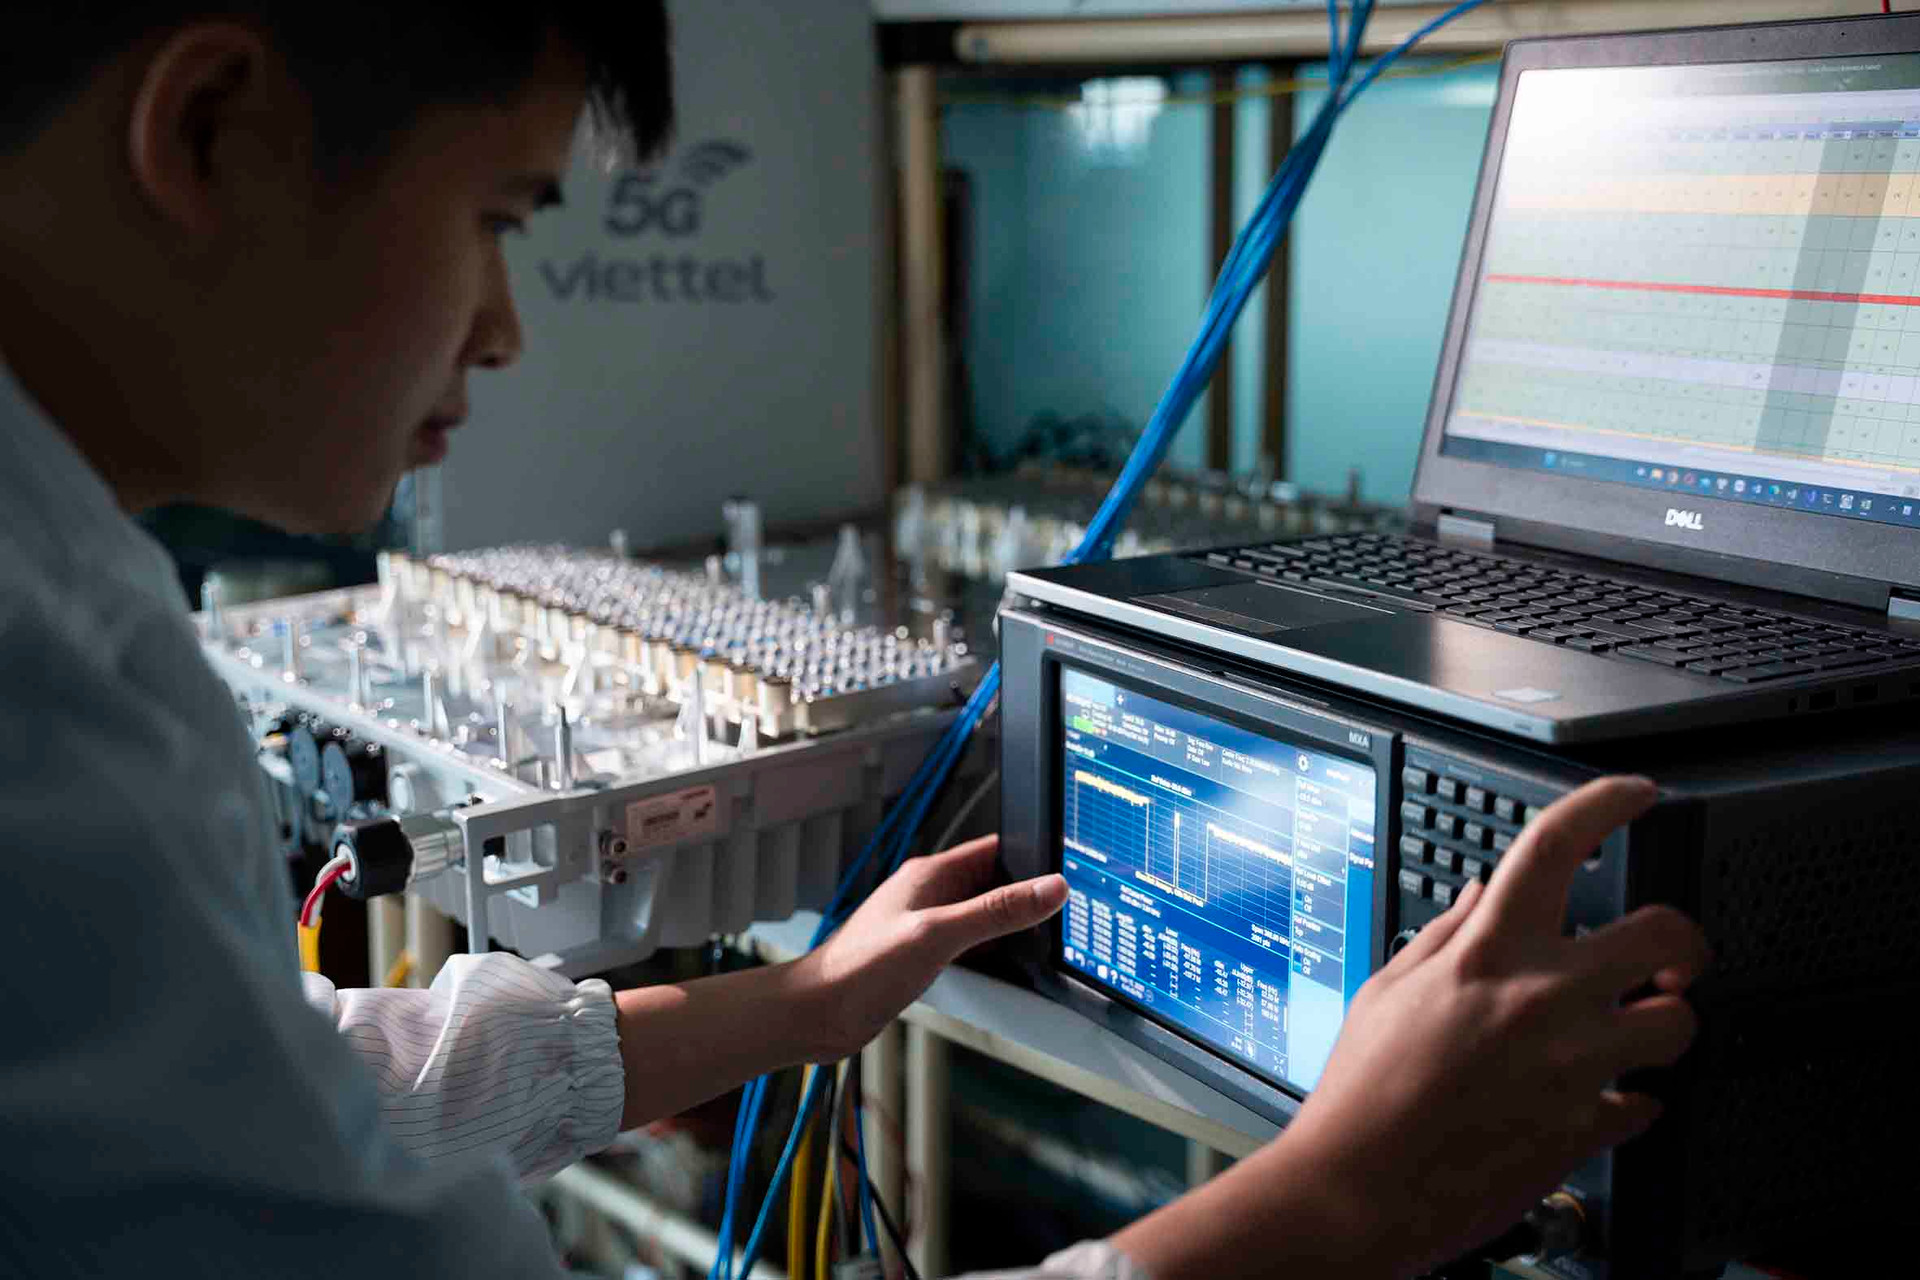 Viettel triển khai thành công trạm 5G đầu tiên trên mạng lưới